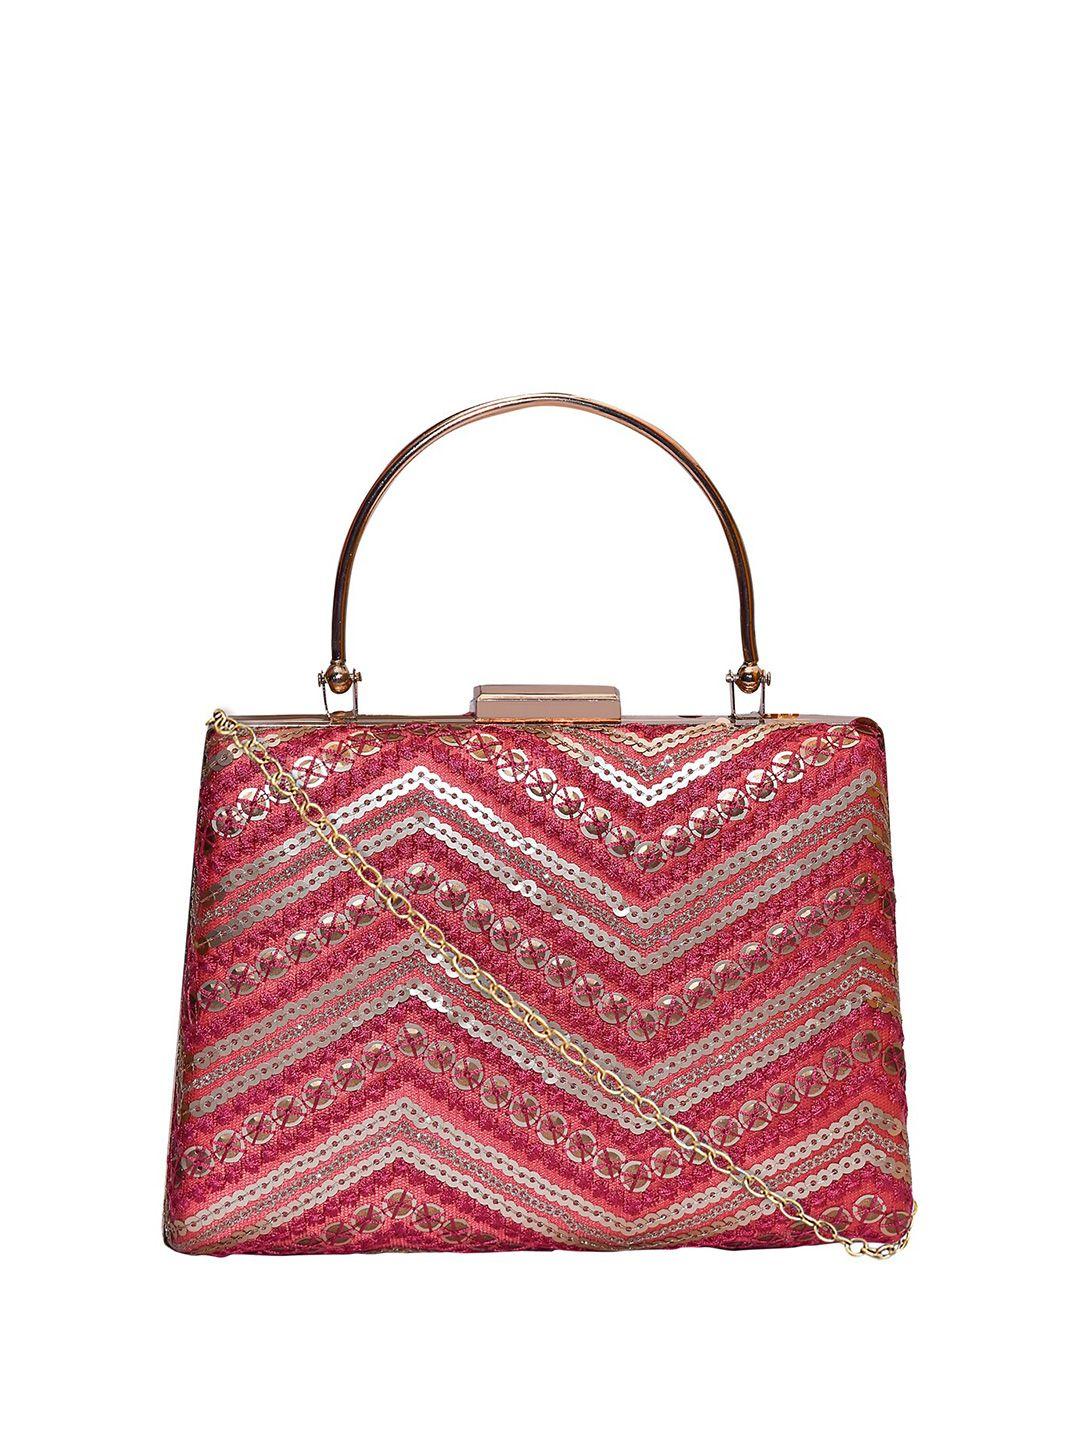 horra sequinned embellished purse